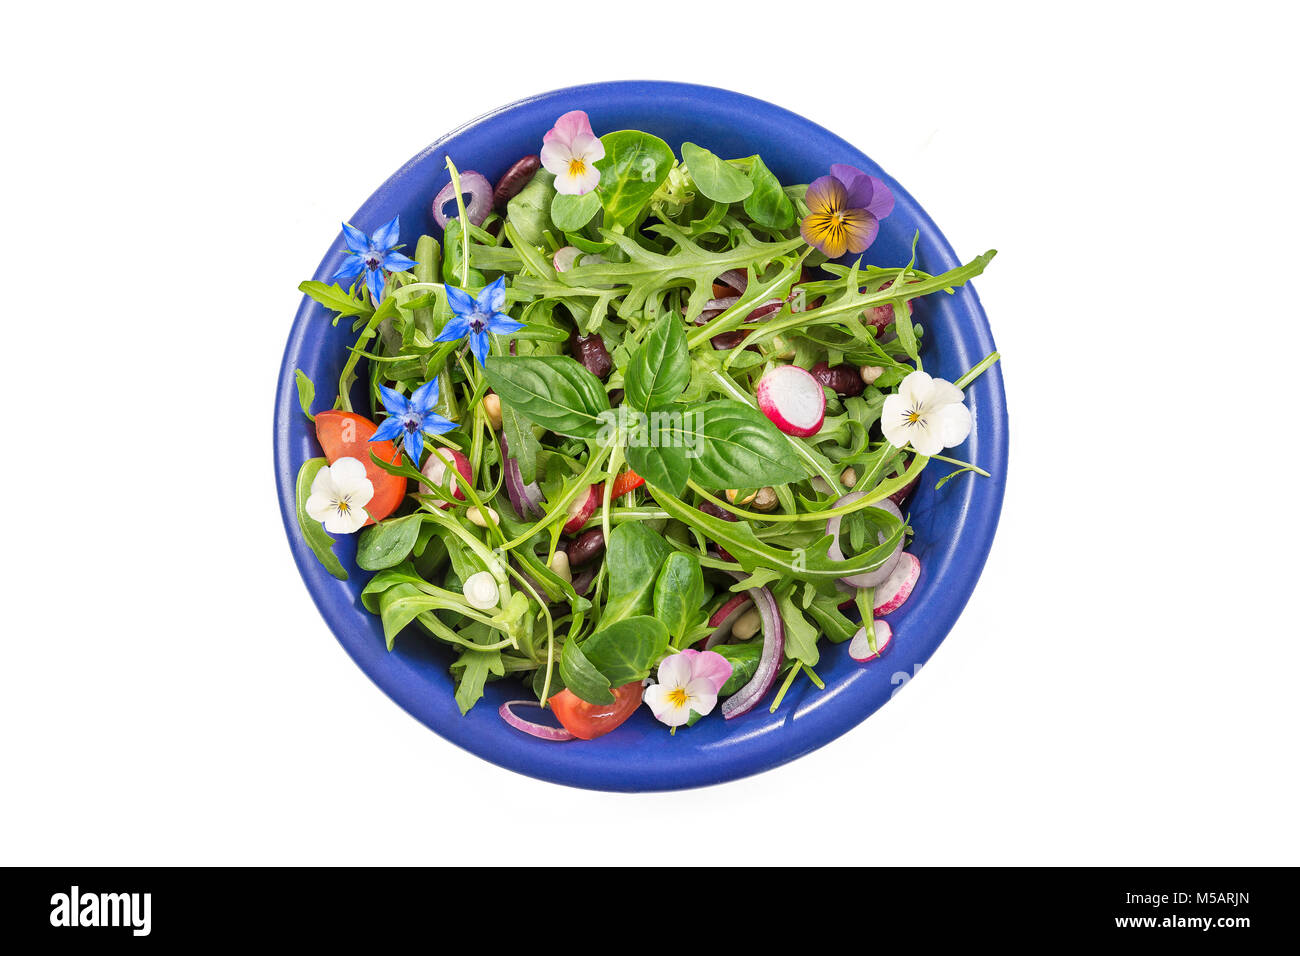 Salade d'herbes fraîches avec des légumes-feuilles et fleurs de capucines servi dans un bol en céramique bleu sur blanc Banque D'Images